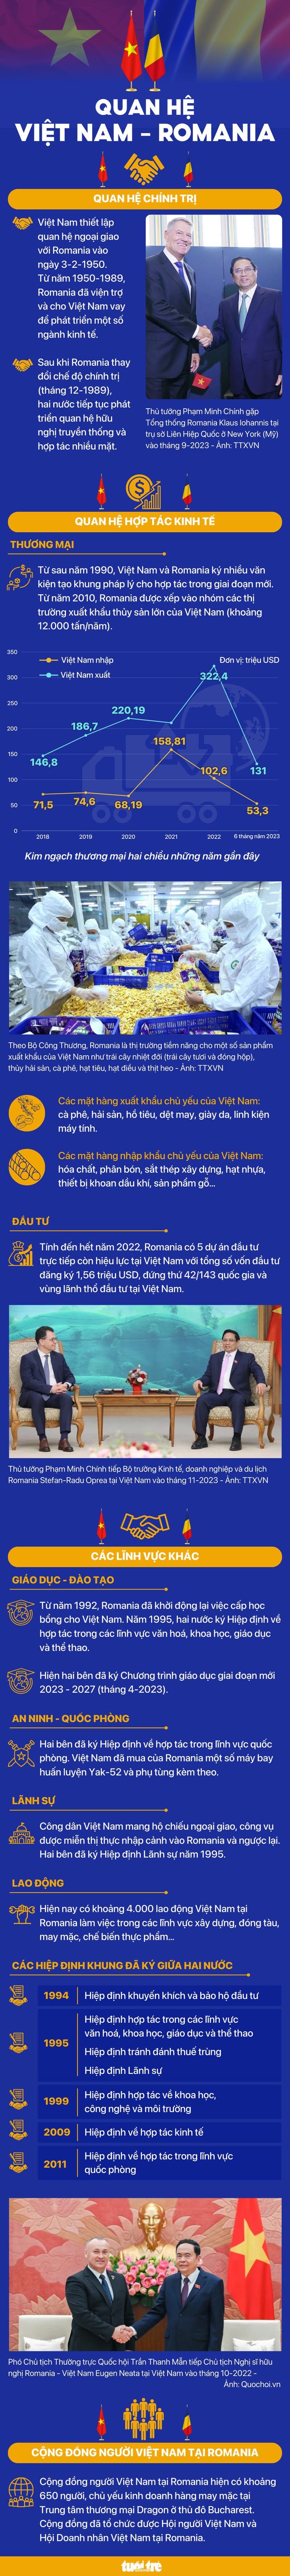 Quan hệ Việt Nam - Romania - Nguồn: Bộ Ngoại giao - Dữ liệu: BÌNH AN - Đồ họa: NGỌC THÀNH